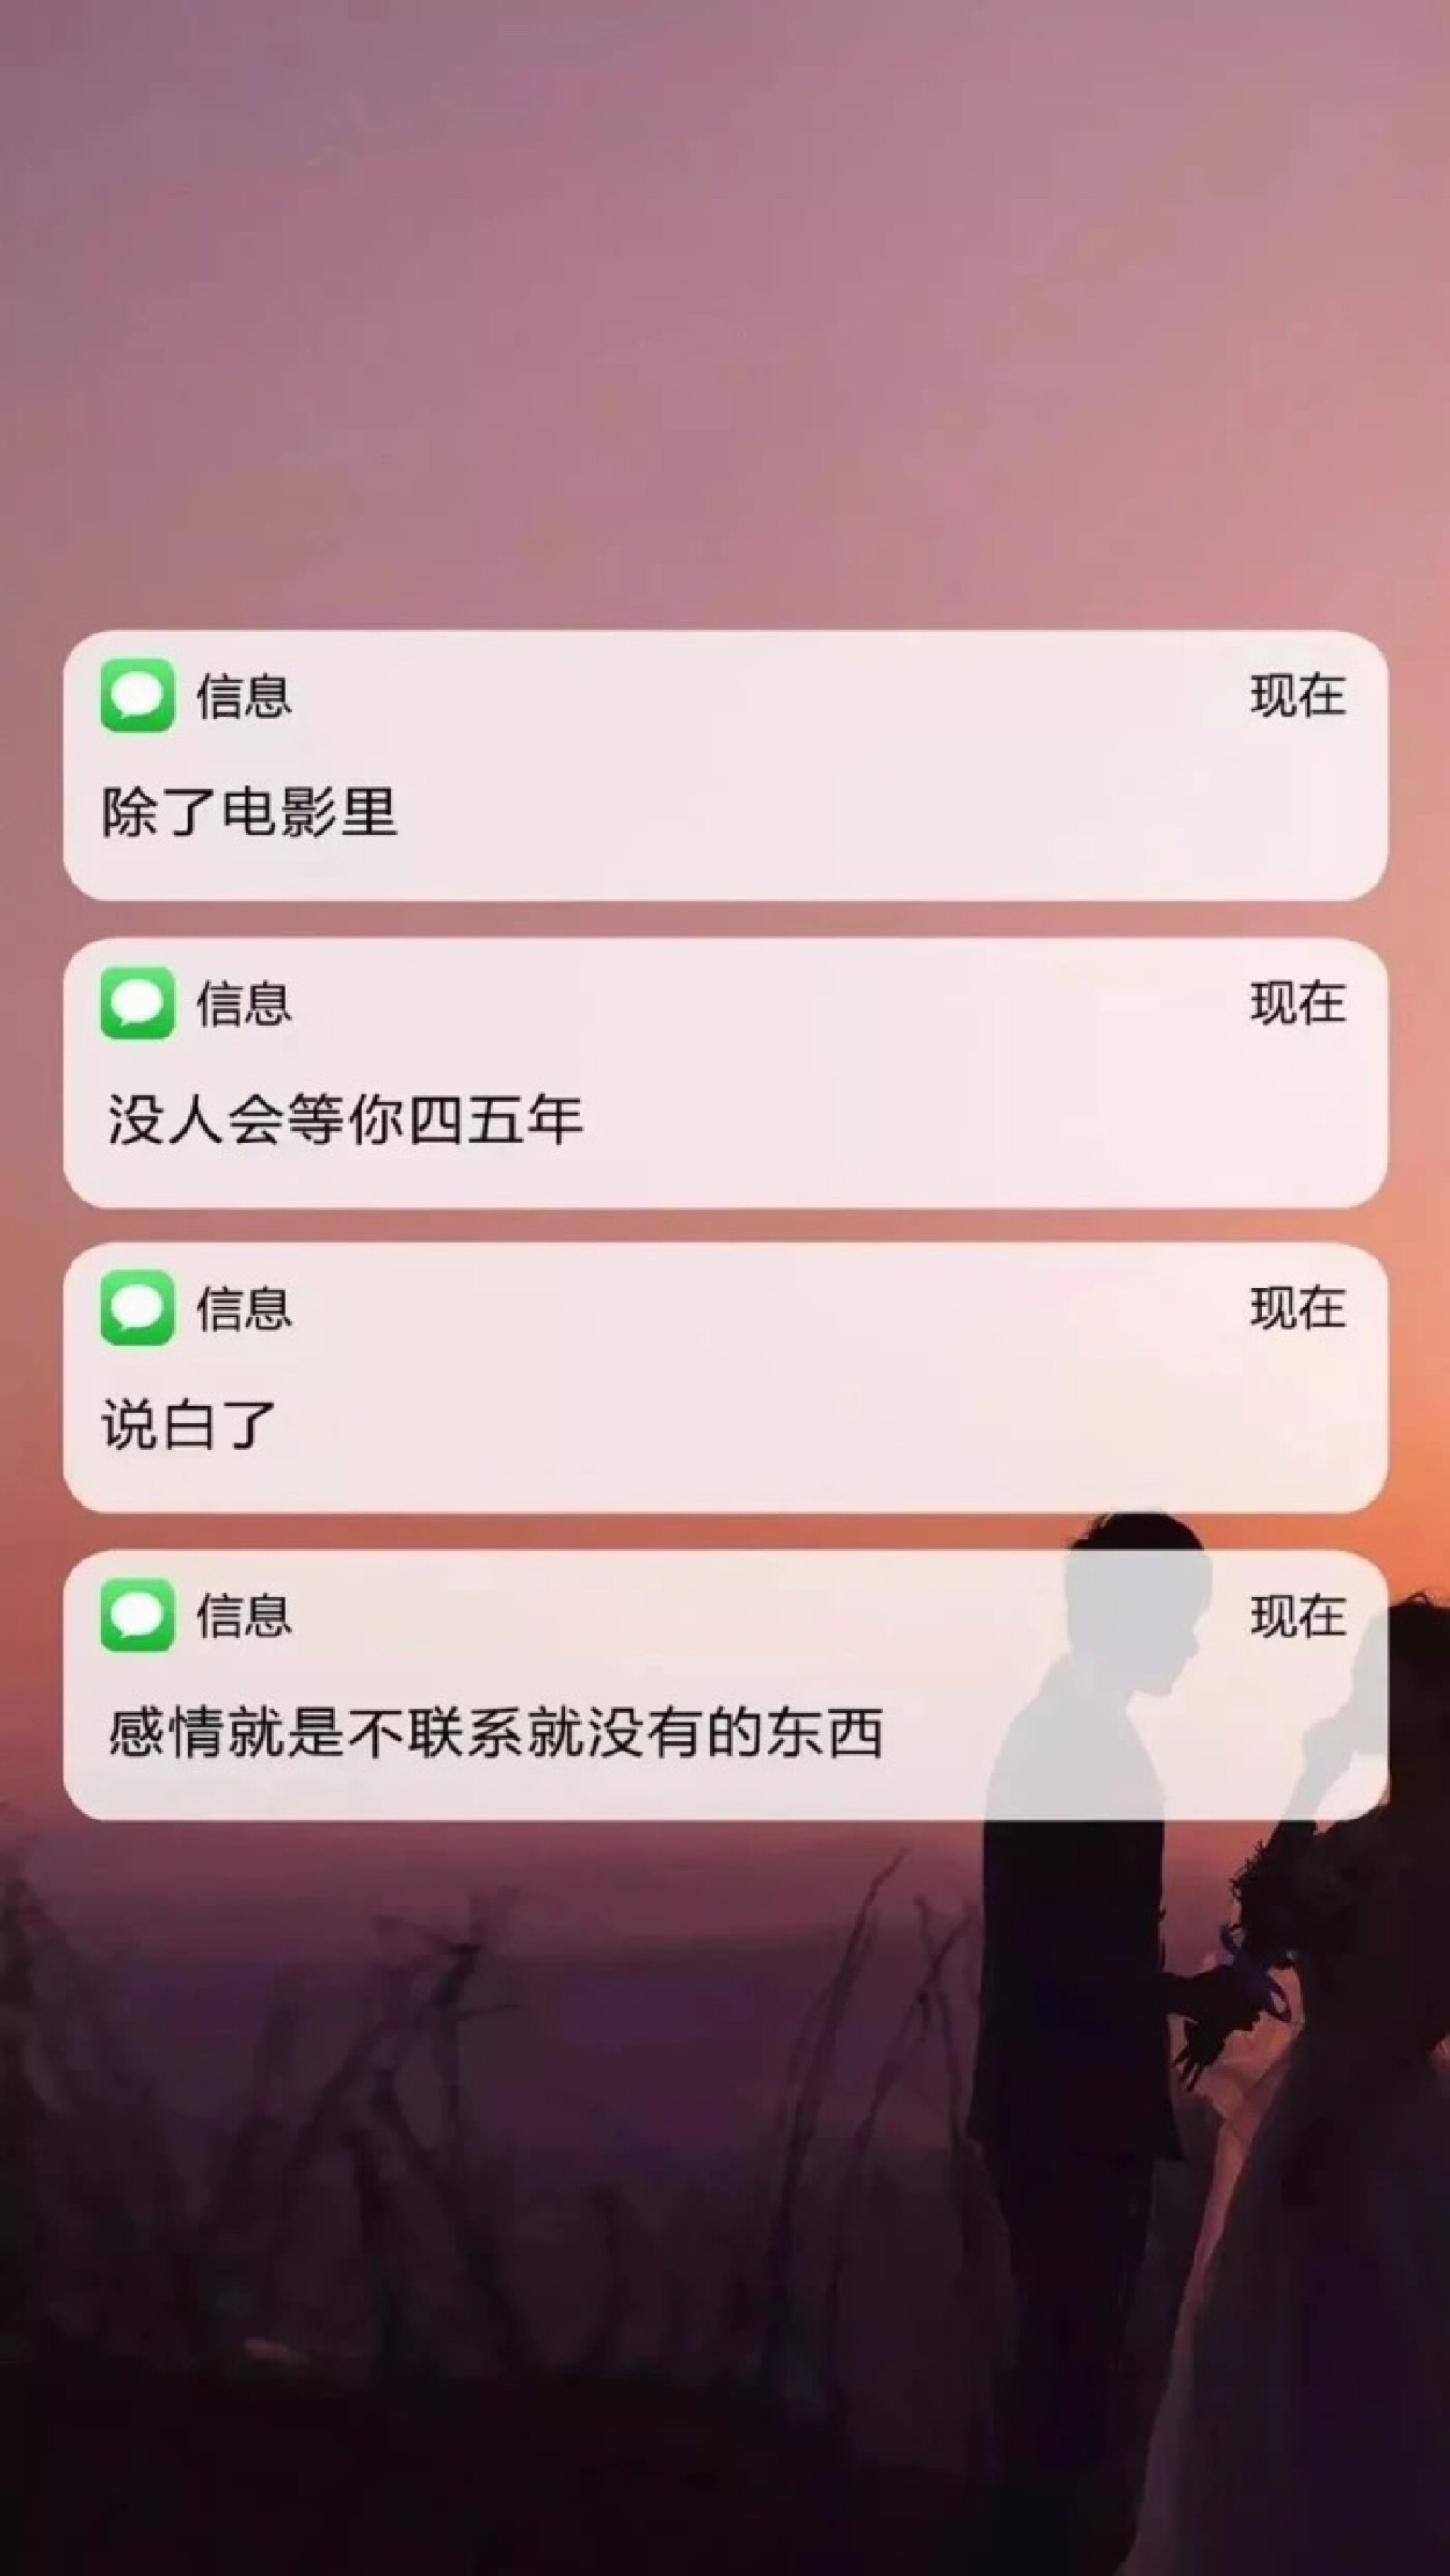 突然收到社保局发的这条短信……我该怎么办？_深圳新闻网